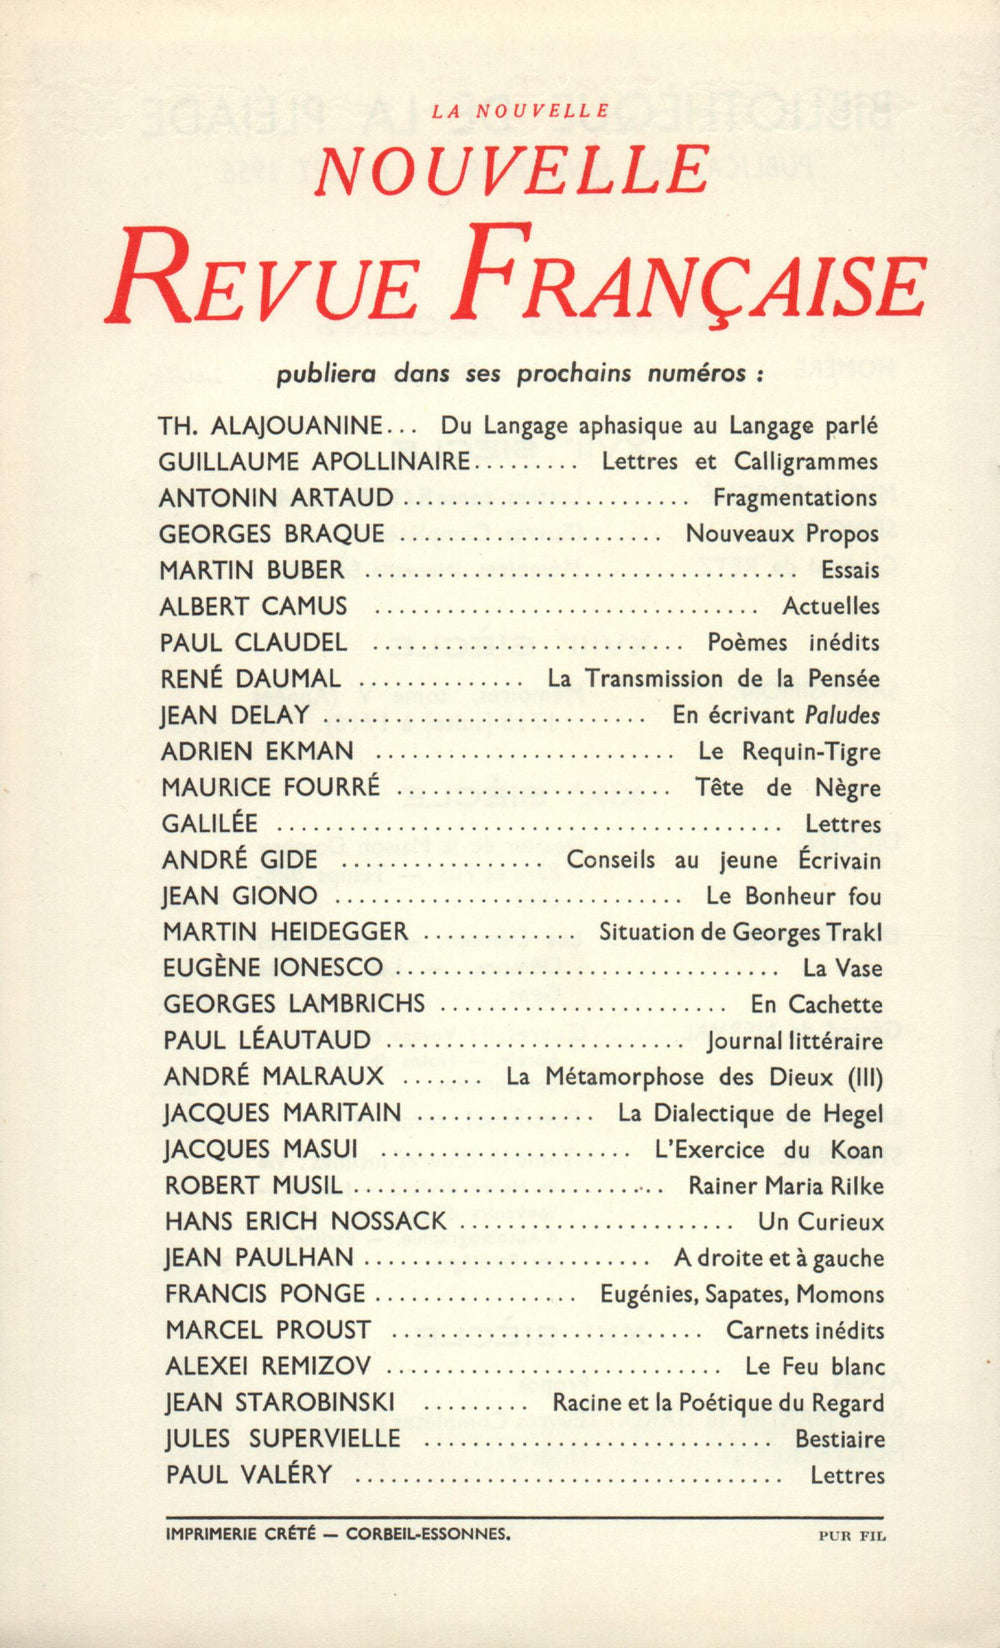 La Nouvelle Nouvelle Revue Française N' 43 (Juillet 1956)